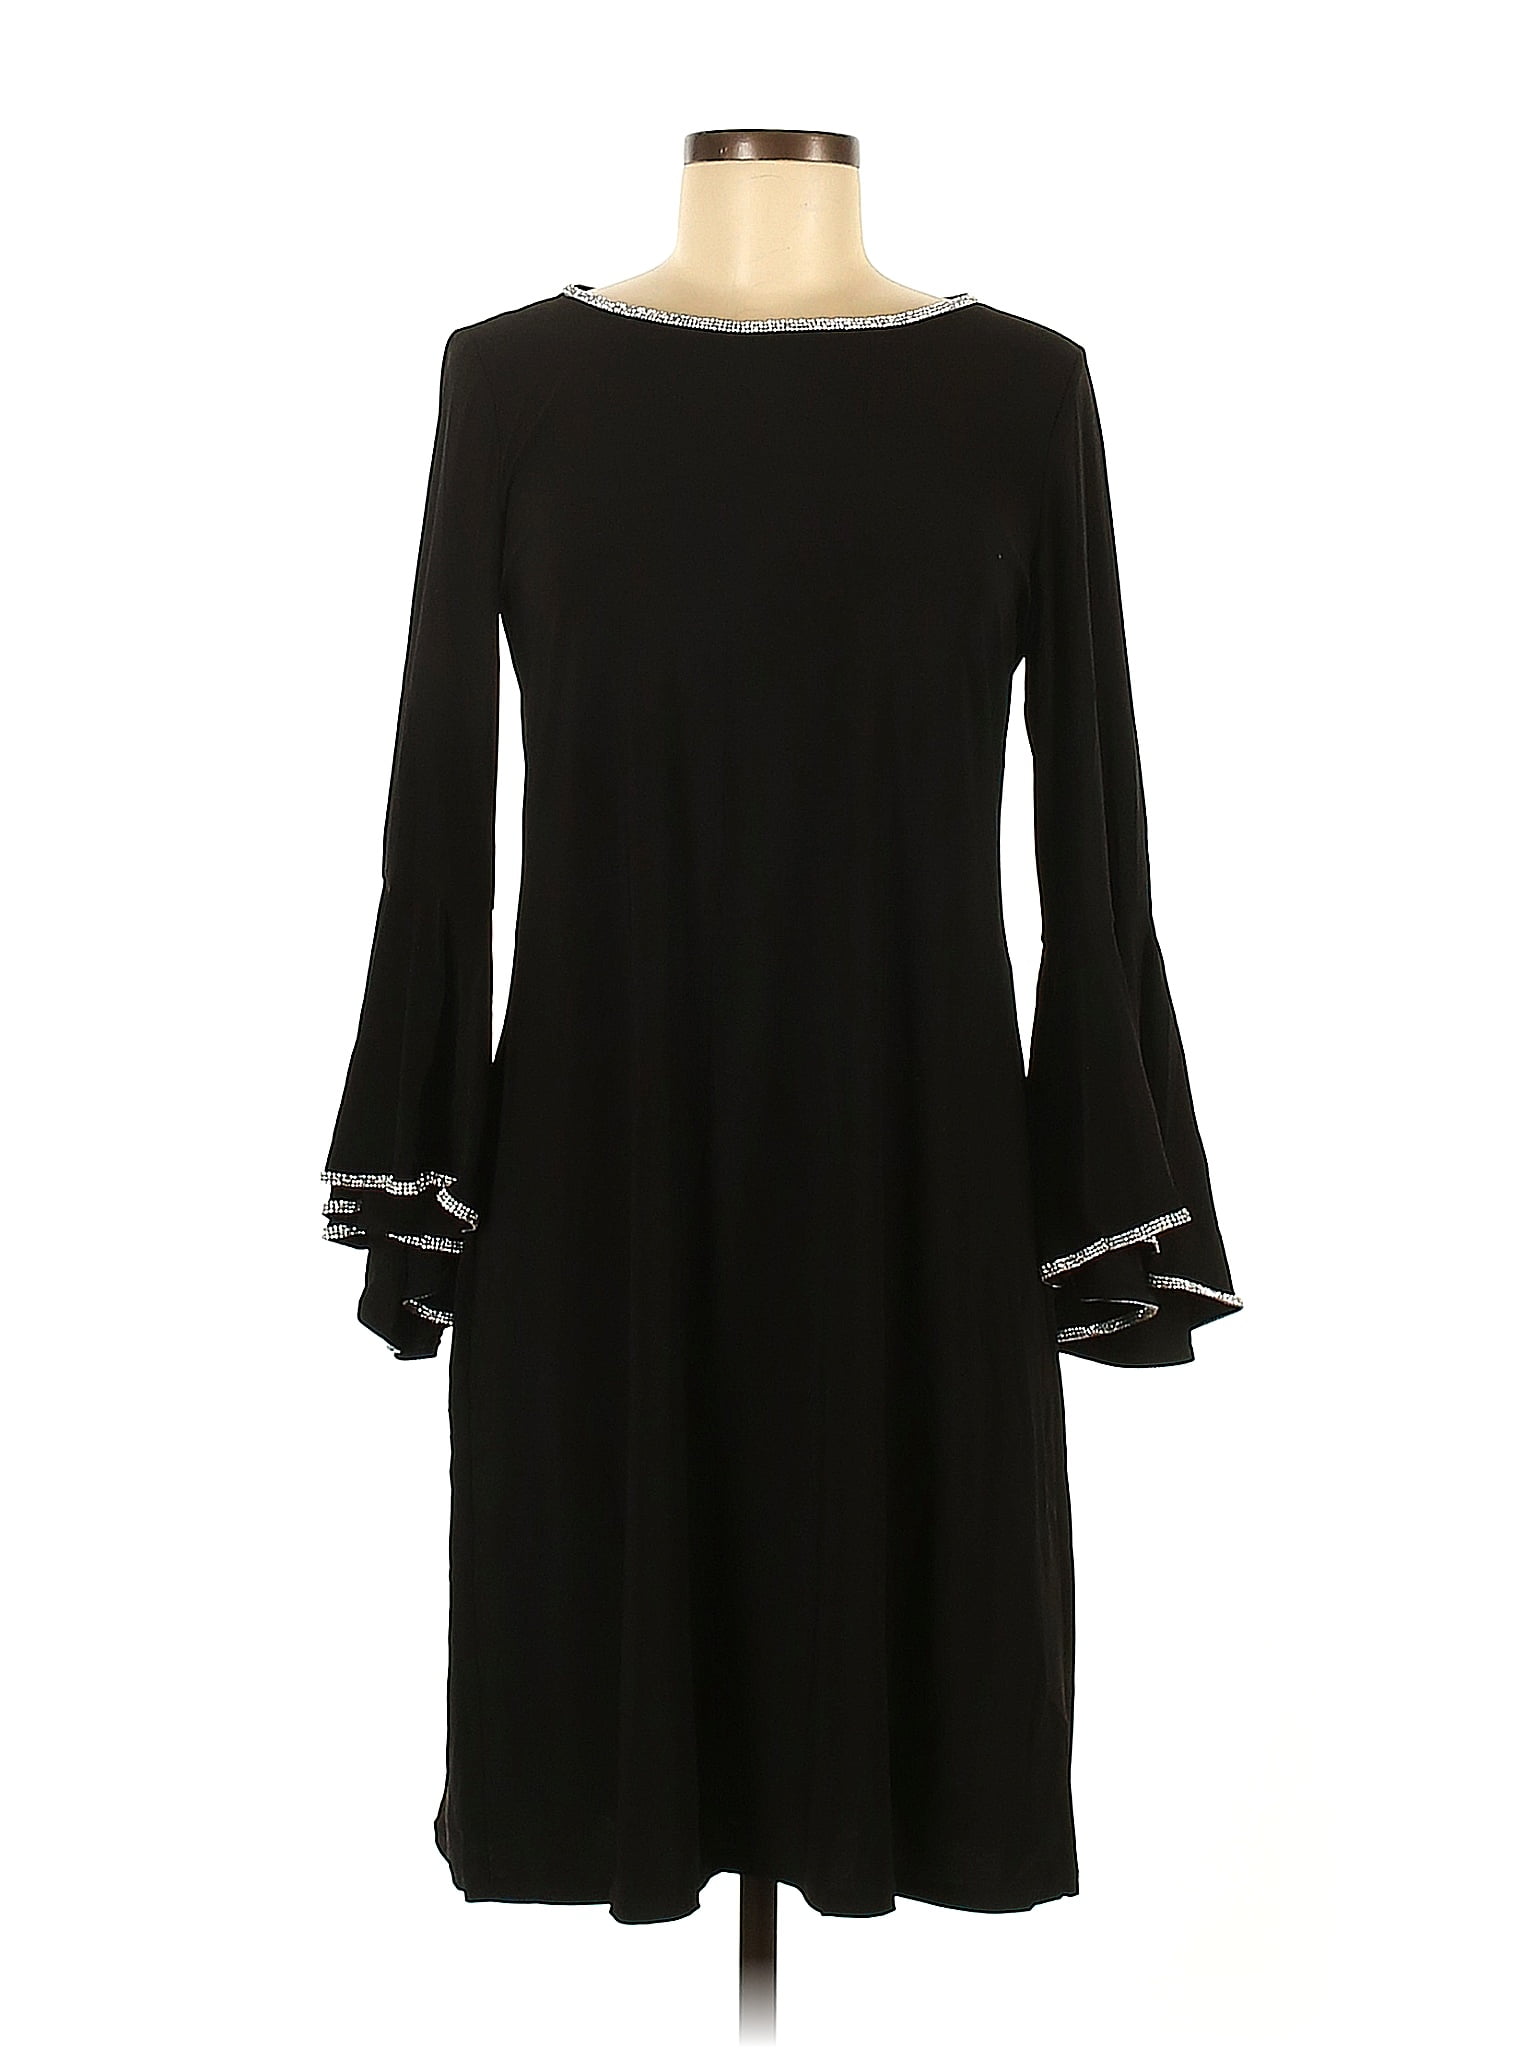 MSK Solid Black Casual Dress Size M - 68% off | thredUP